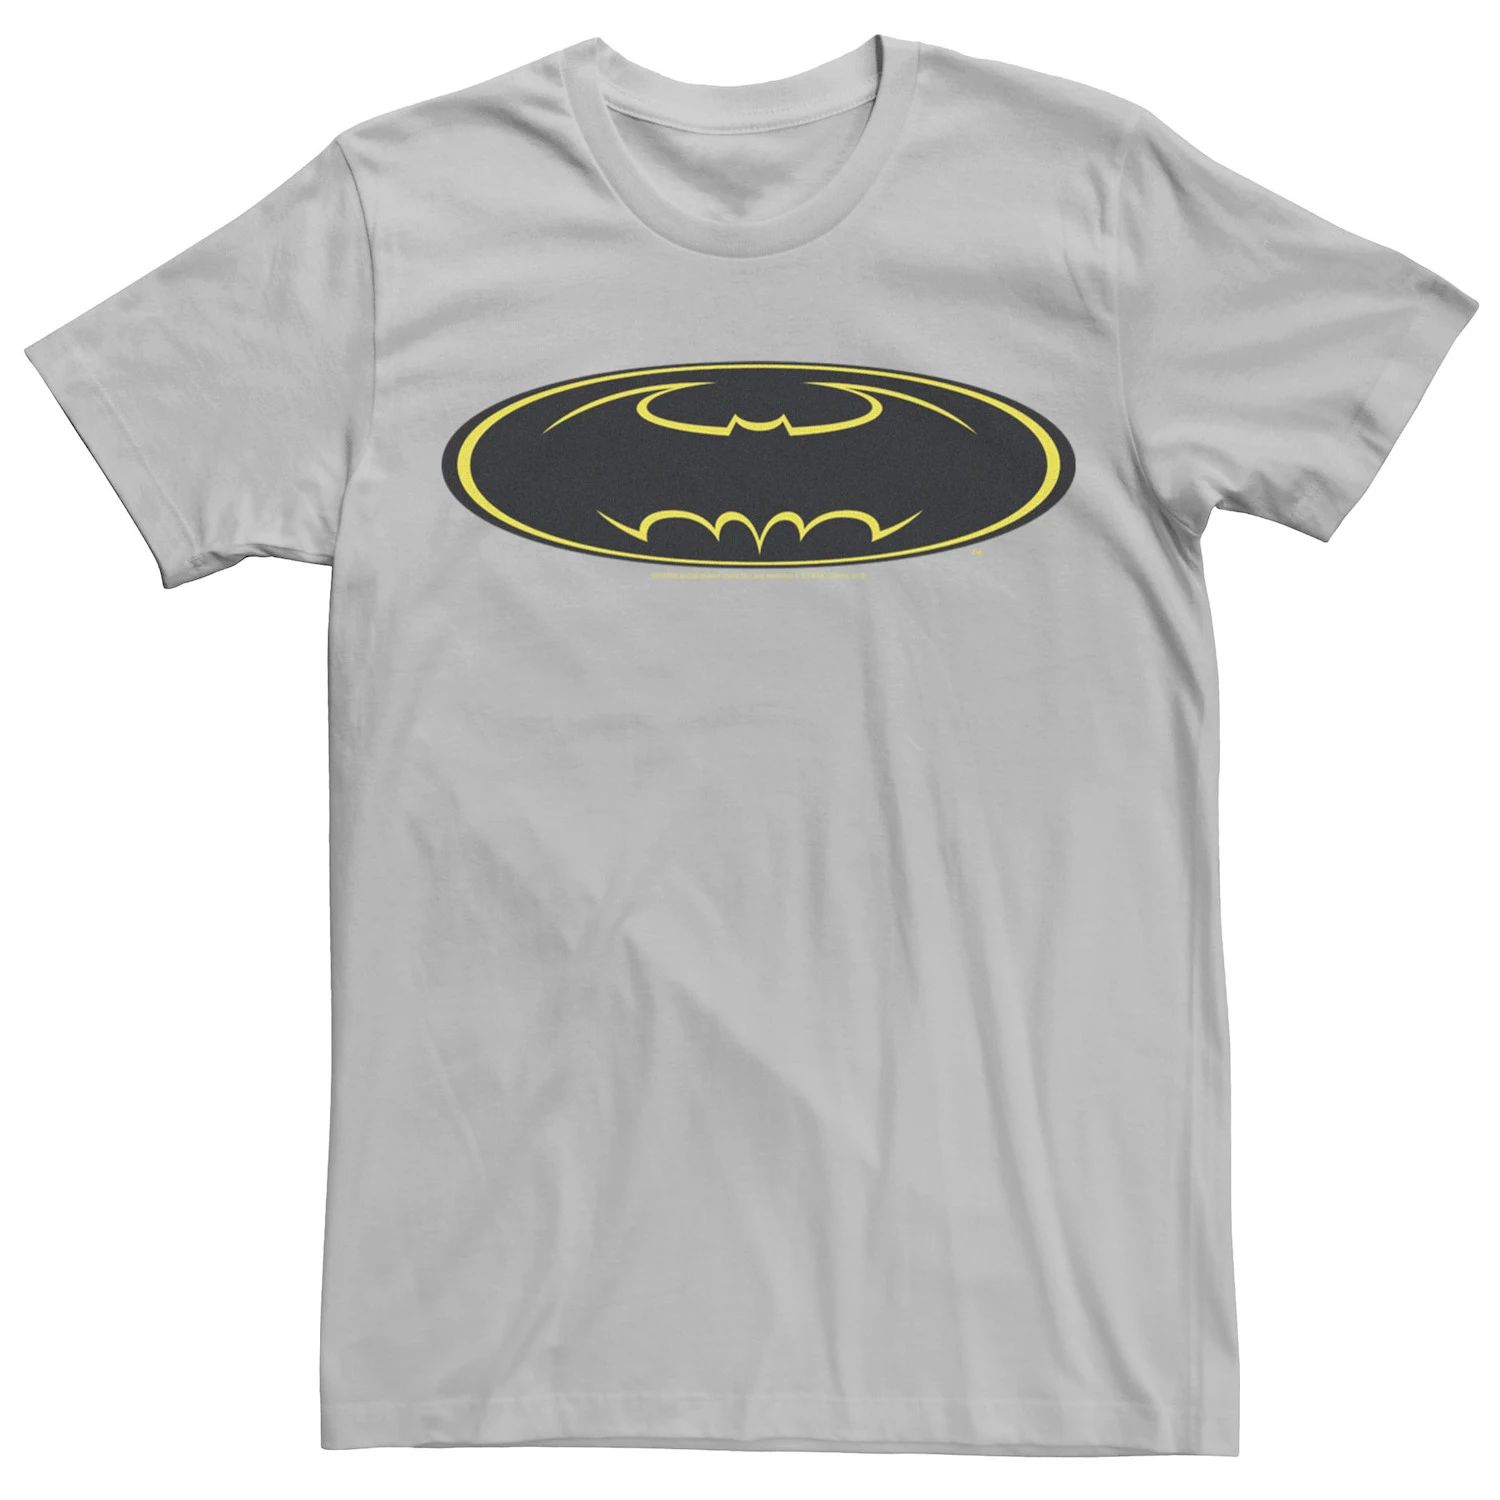 Мужская желтая футболка с логотипом на груди из комиксов Бэтмен DC Comics, серебристый